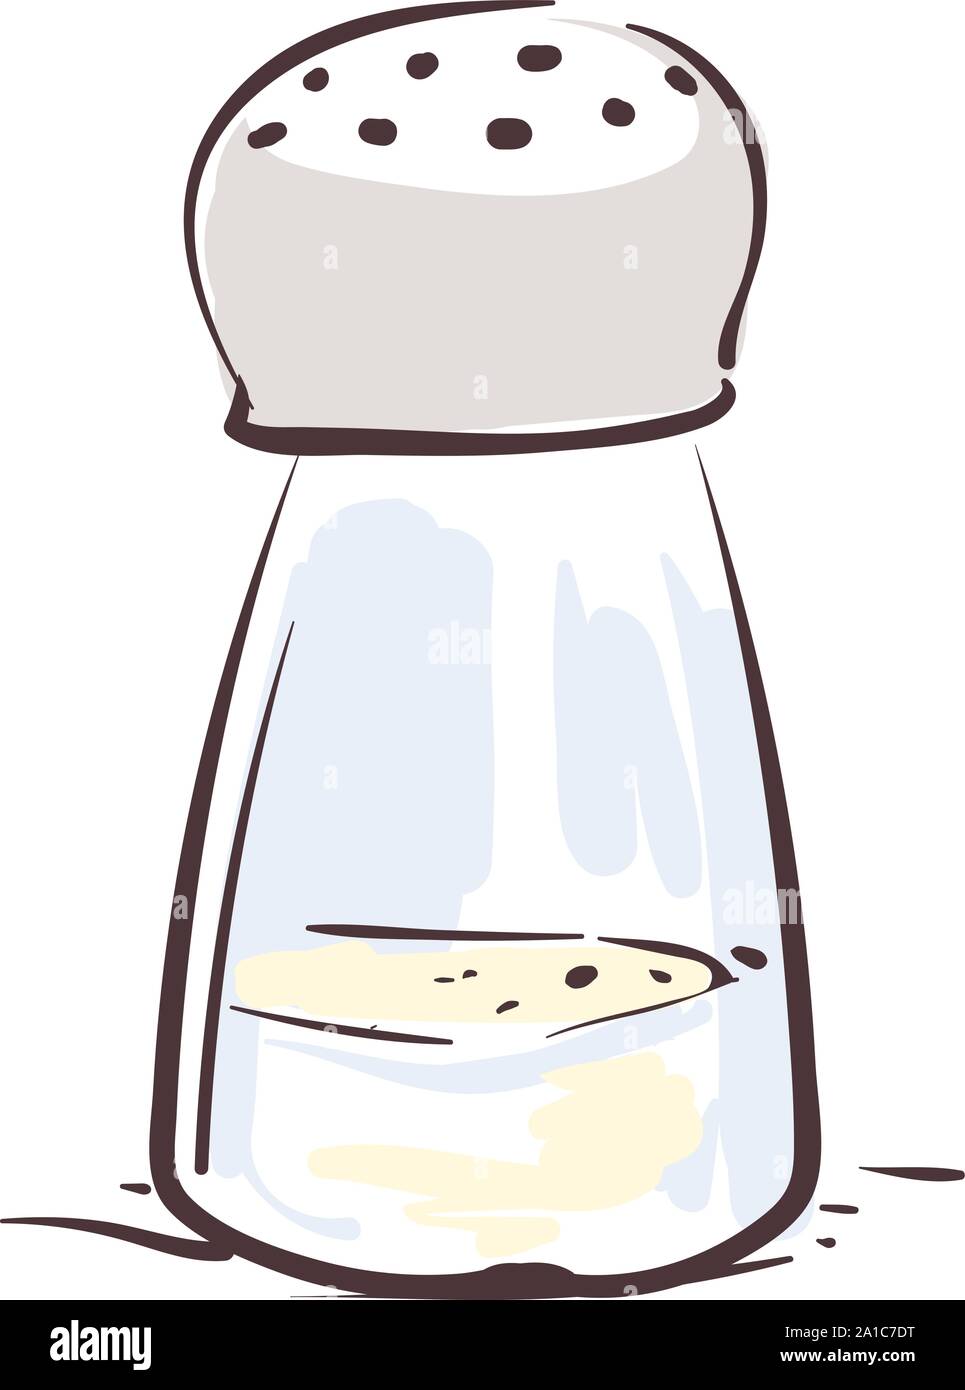 Salt shaker, illustration, vector on white background Stock Vector Image &  Art - Alamy